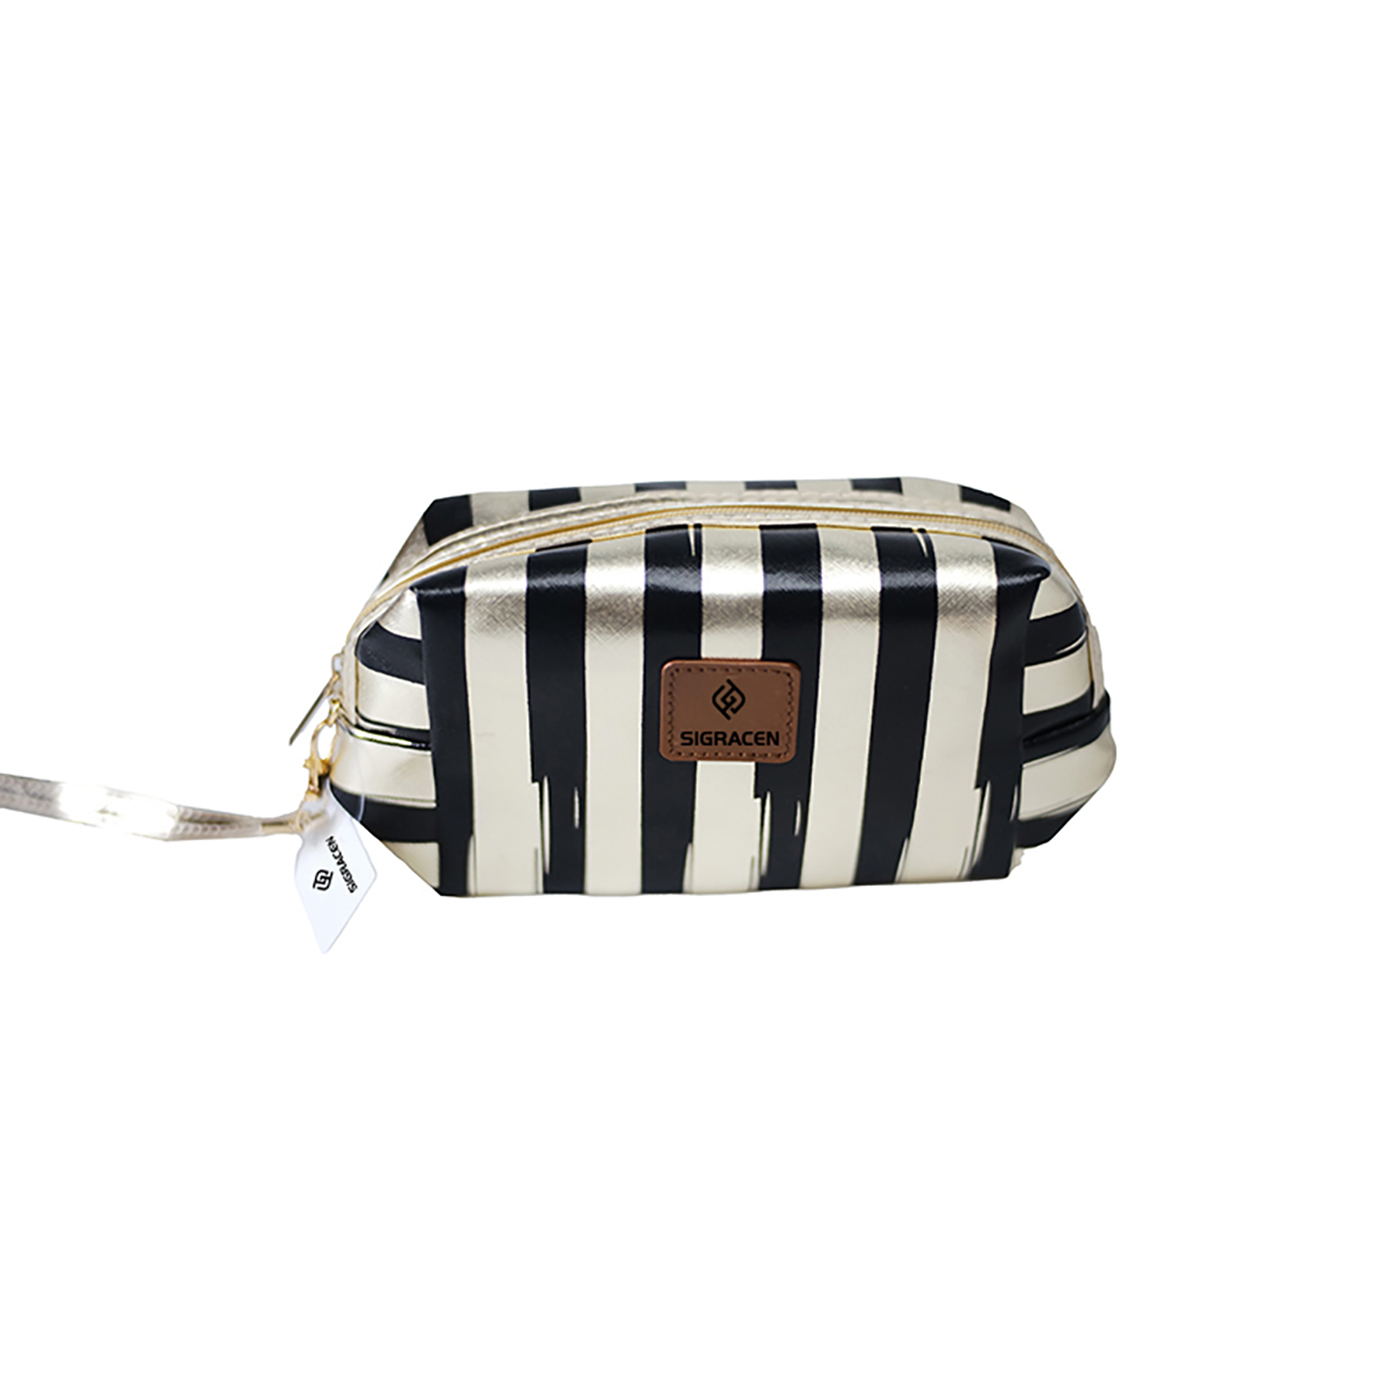 Stripe PU Leather Cosmetic Clutch Bag